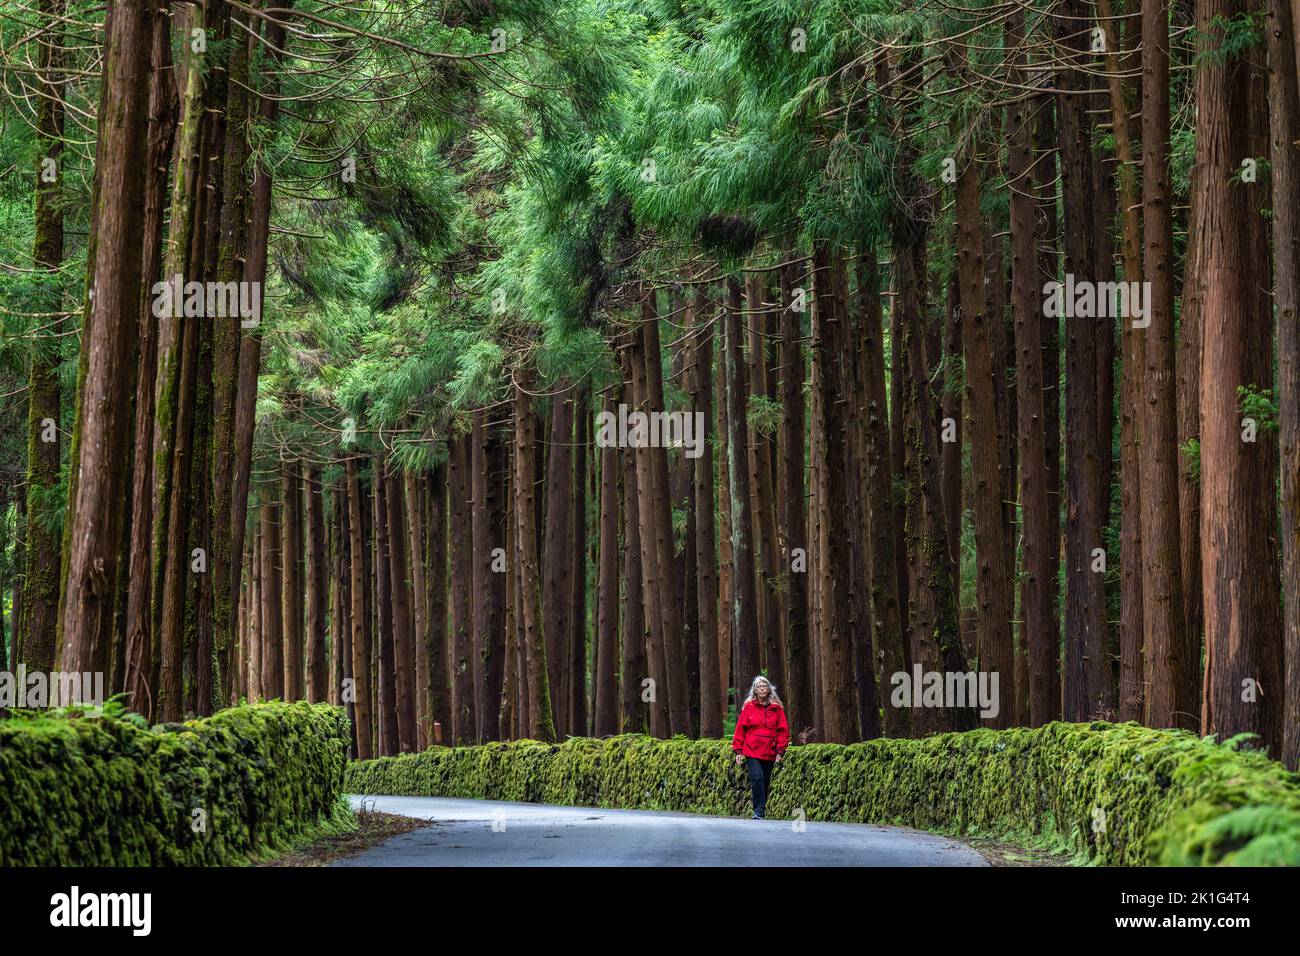 Una donna cammina davanti a giganteschi alberi di cedro giapponesi nel parco naturale Reserva Florestal Parcial da Serra de S. Barbara e dos Misterios Negros sull'isola di Terceira, Azzorre, Portogallo. Oltre il 22% della terra sull'isola di Terceira è messa da parte come riserva naturale. Foto Stock